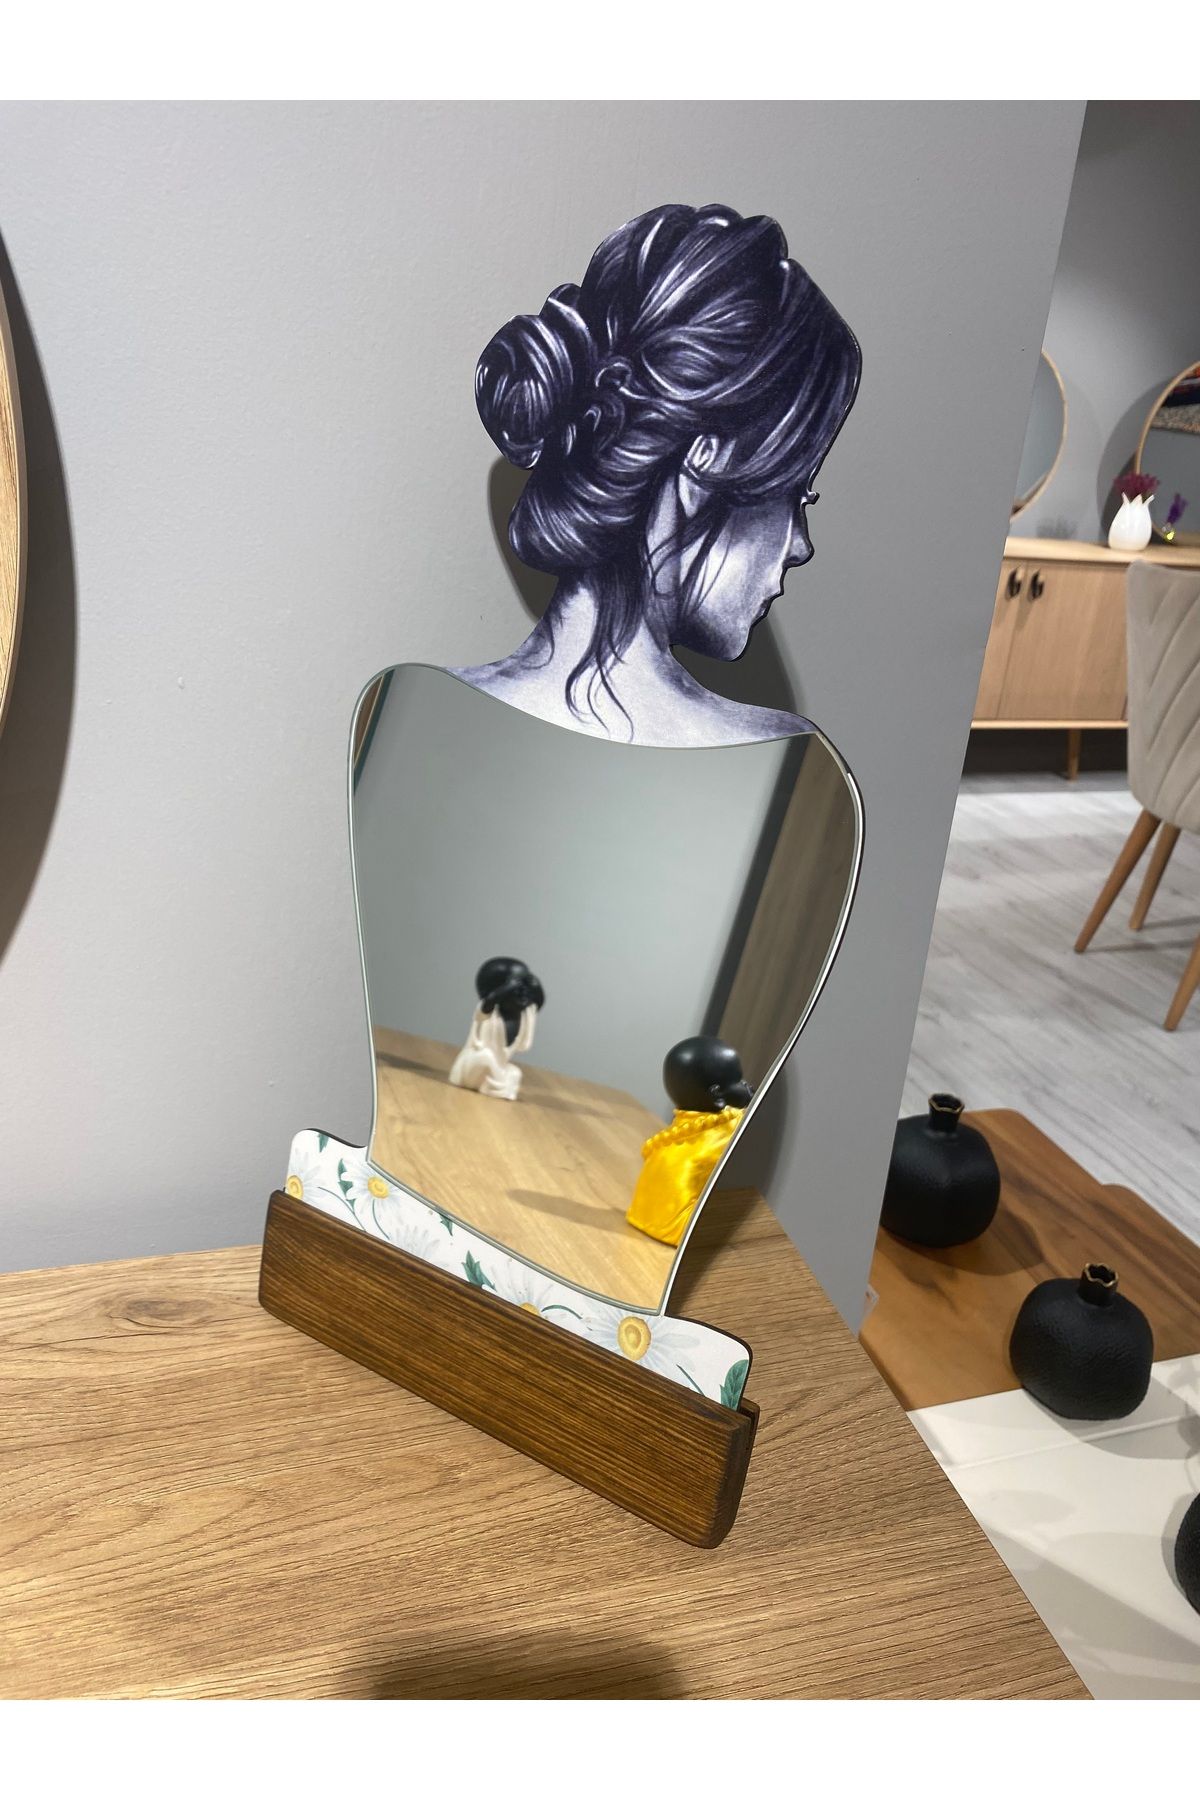 wodelia Kadın Temalı Dekoratif Makyaj Aynası, Modern Eşsiz Ayna,Ofis Masa Modern Ev Aynası38x21Cm Koyu ceviz